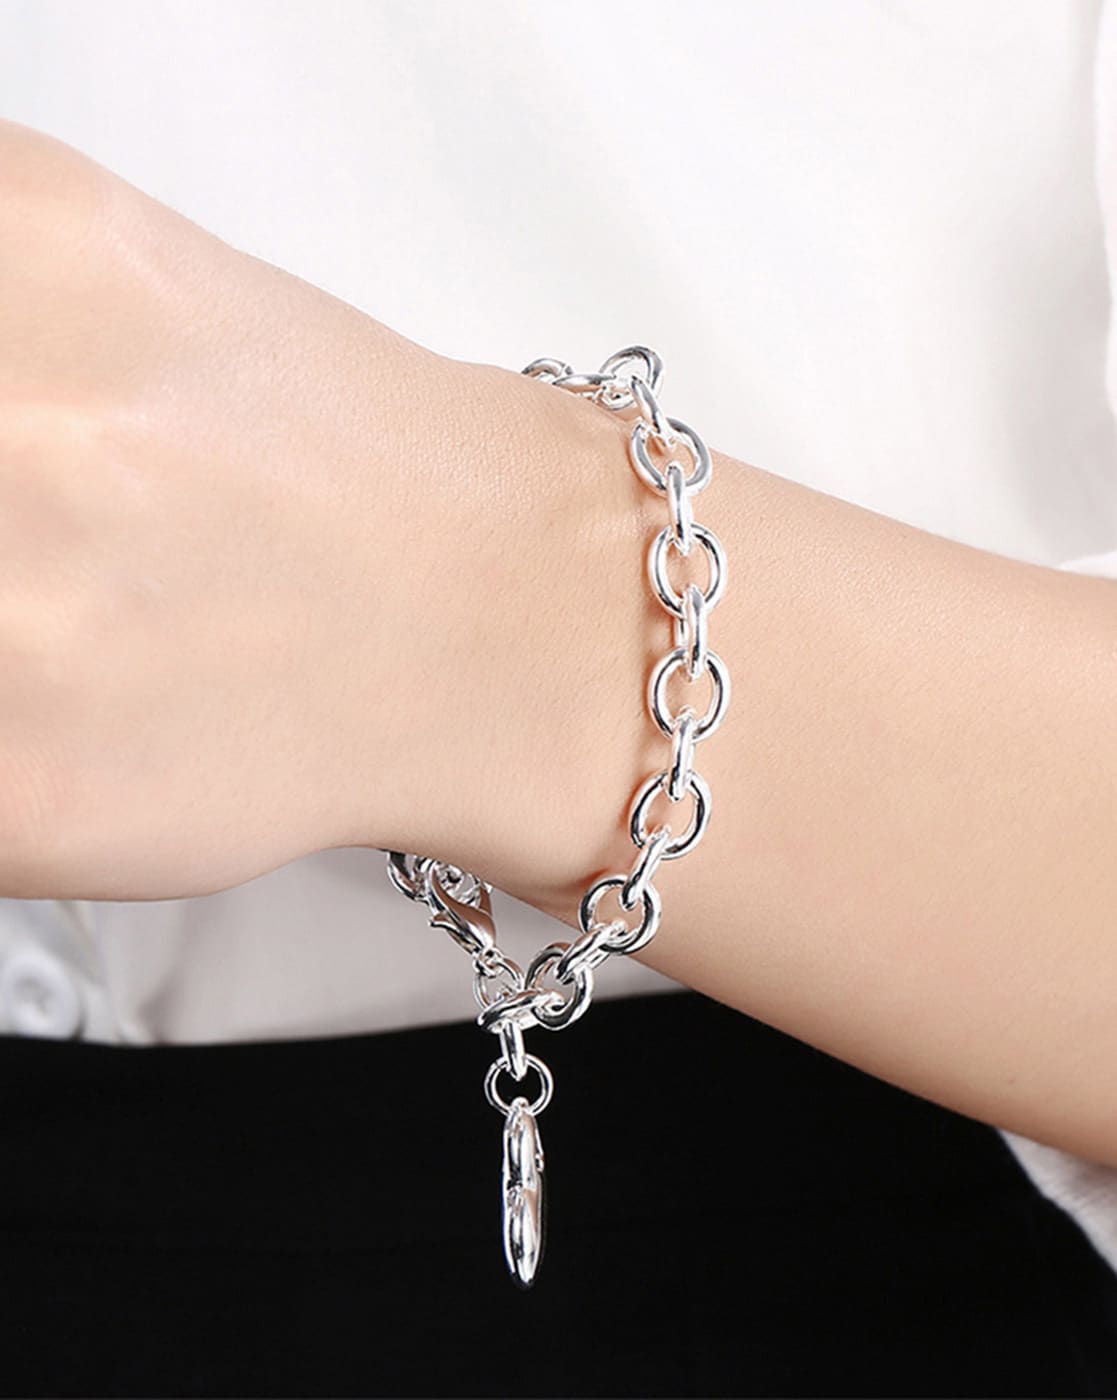 Pandora Bracelets For Girls  Silver Bracelet For Womens Heart Star